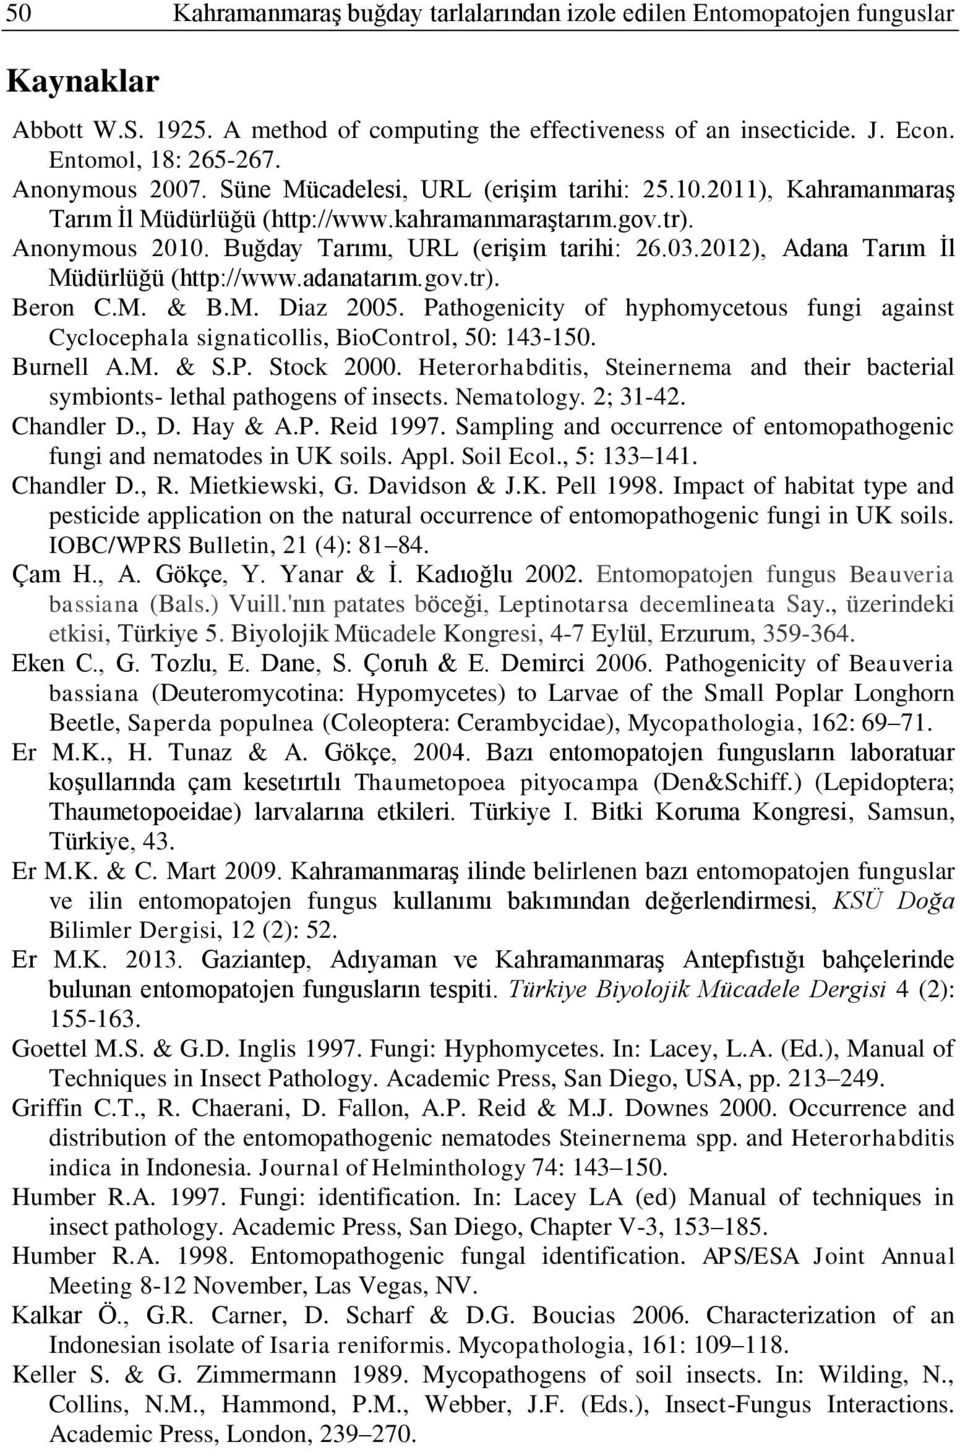 2012), Adana Tarım Ġl Müdürlüğü (http://www.adanatarım.gov.tr). Beron C.M. & B.M. Diaz 2005. Pathogenicity of hyphomycetous fungi against Cyclocephala signaticollis, BioControl, 50: 143-150.